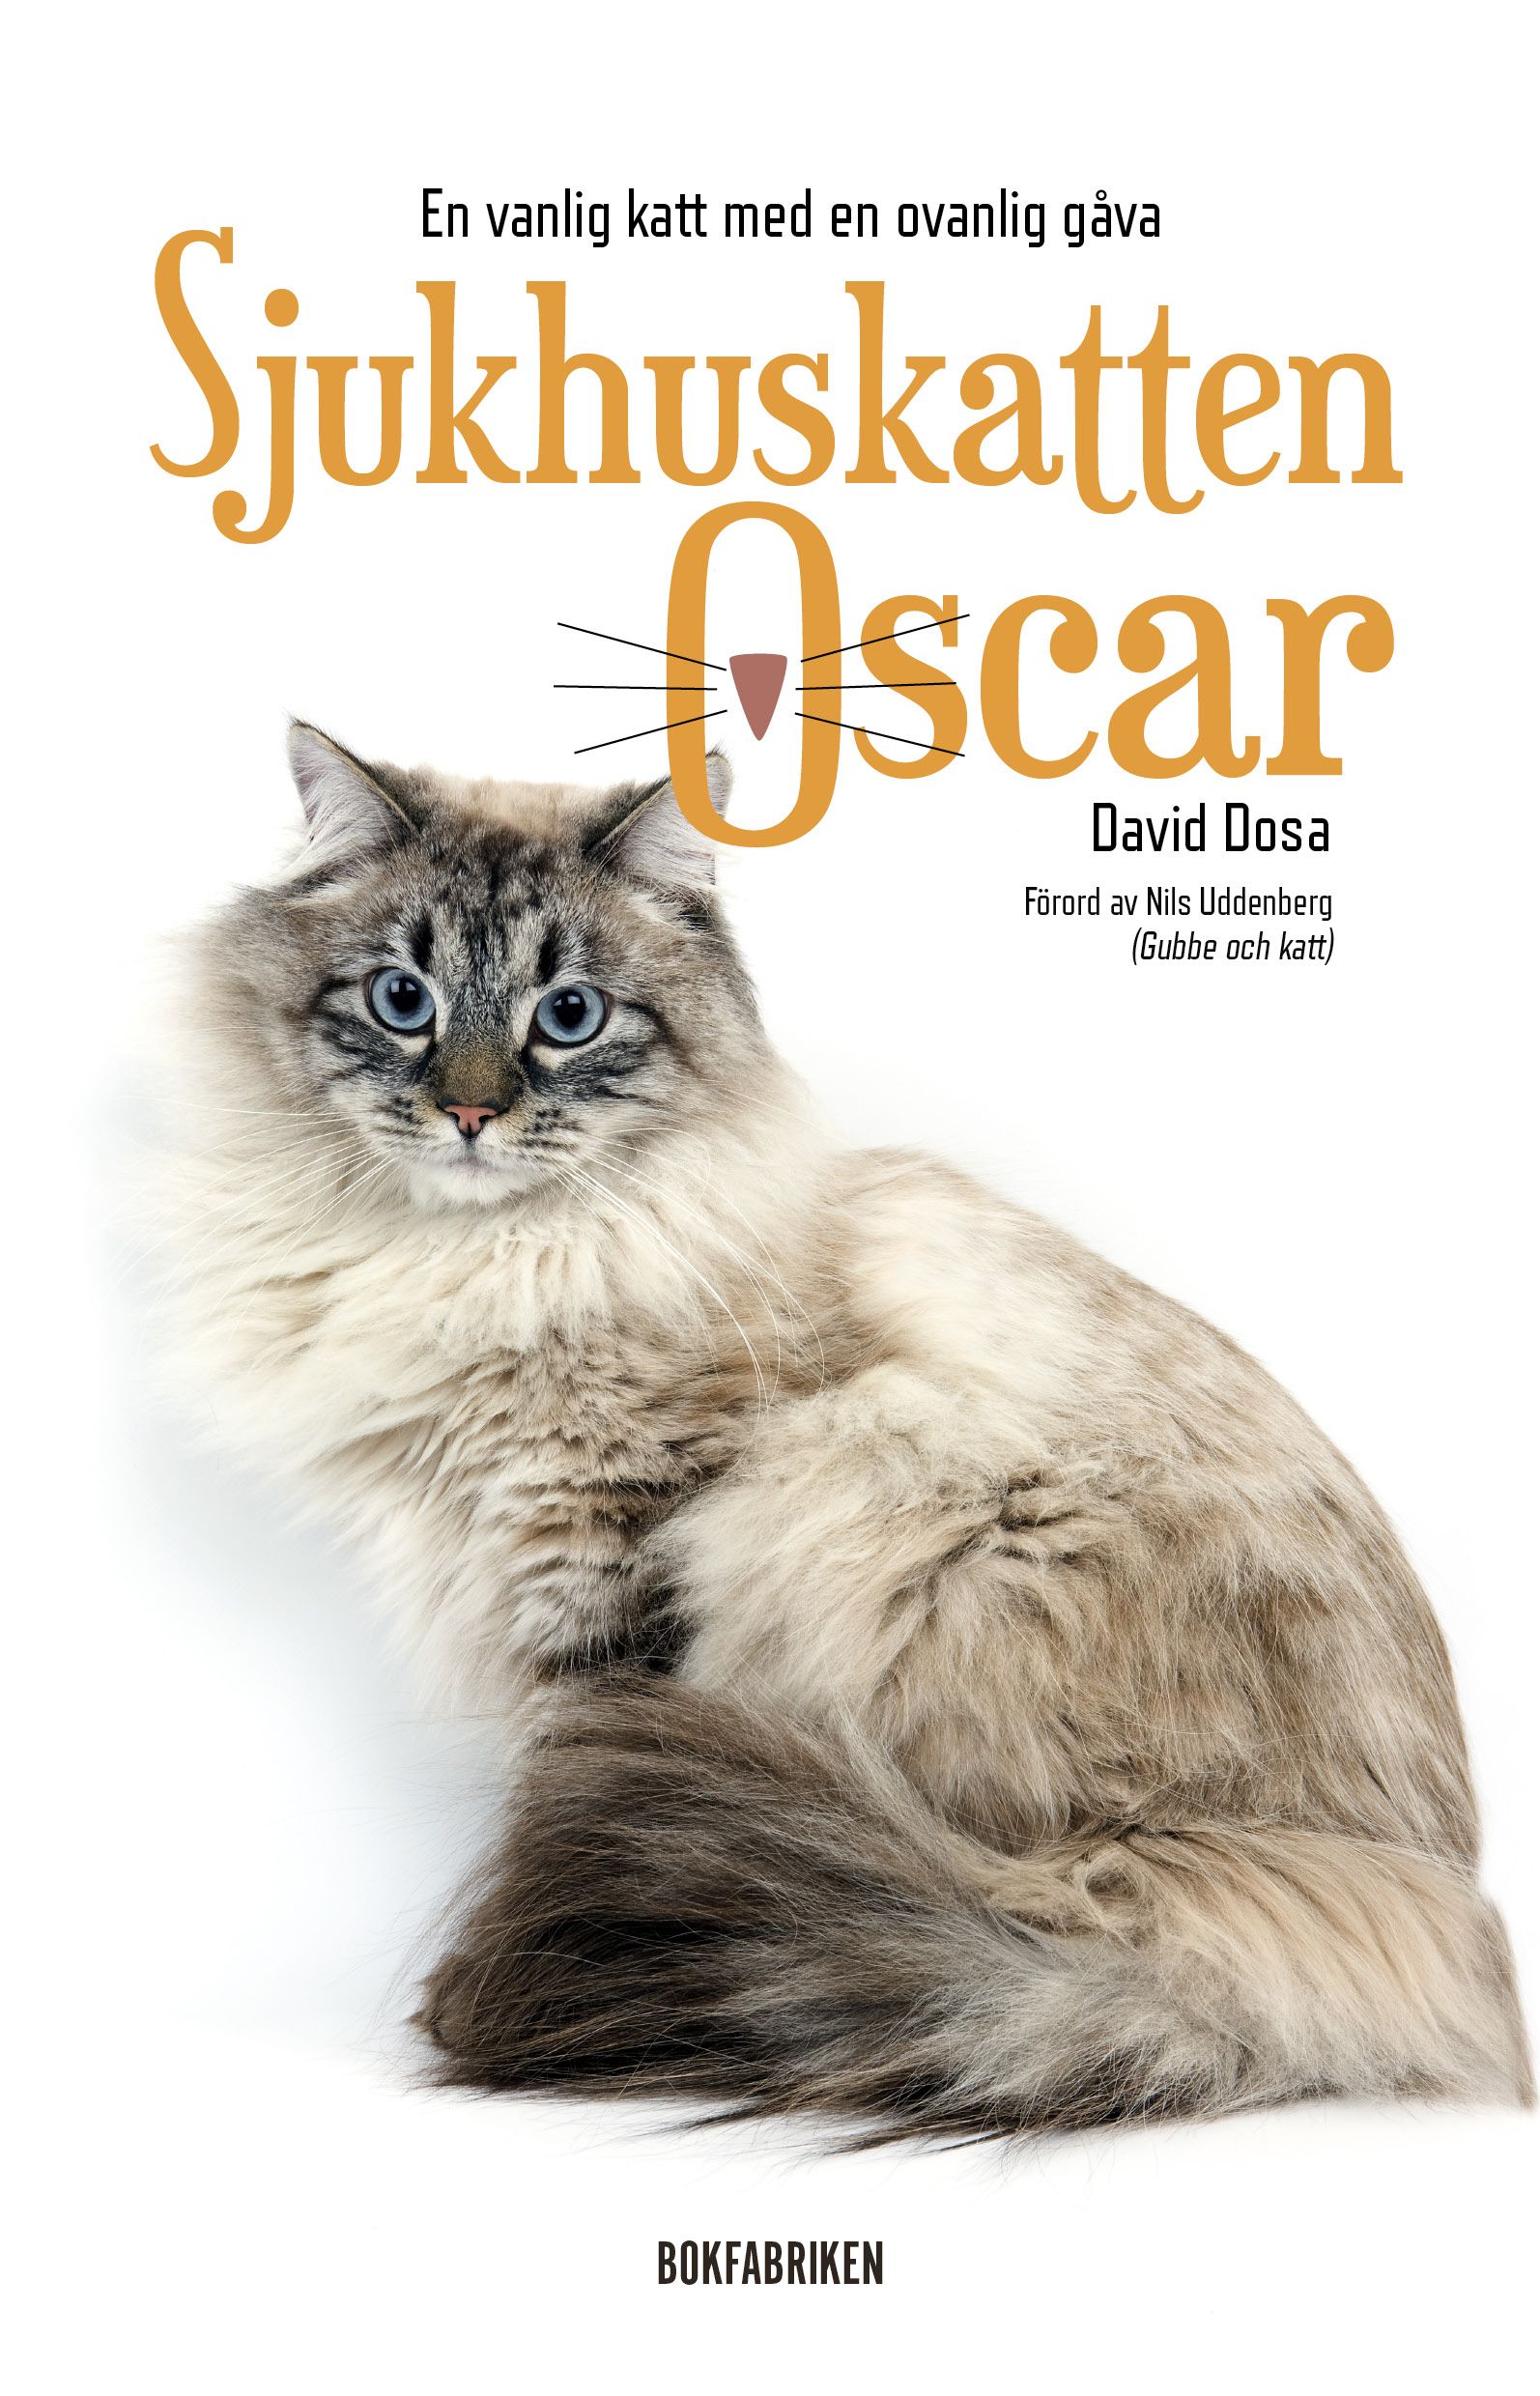 Sjukhuskatten Oscar : En vanlig katt med en ovanlig gåva, e-bog af David Dosa